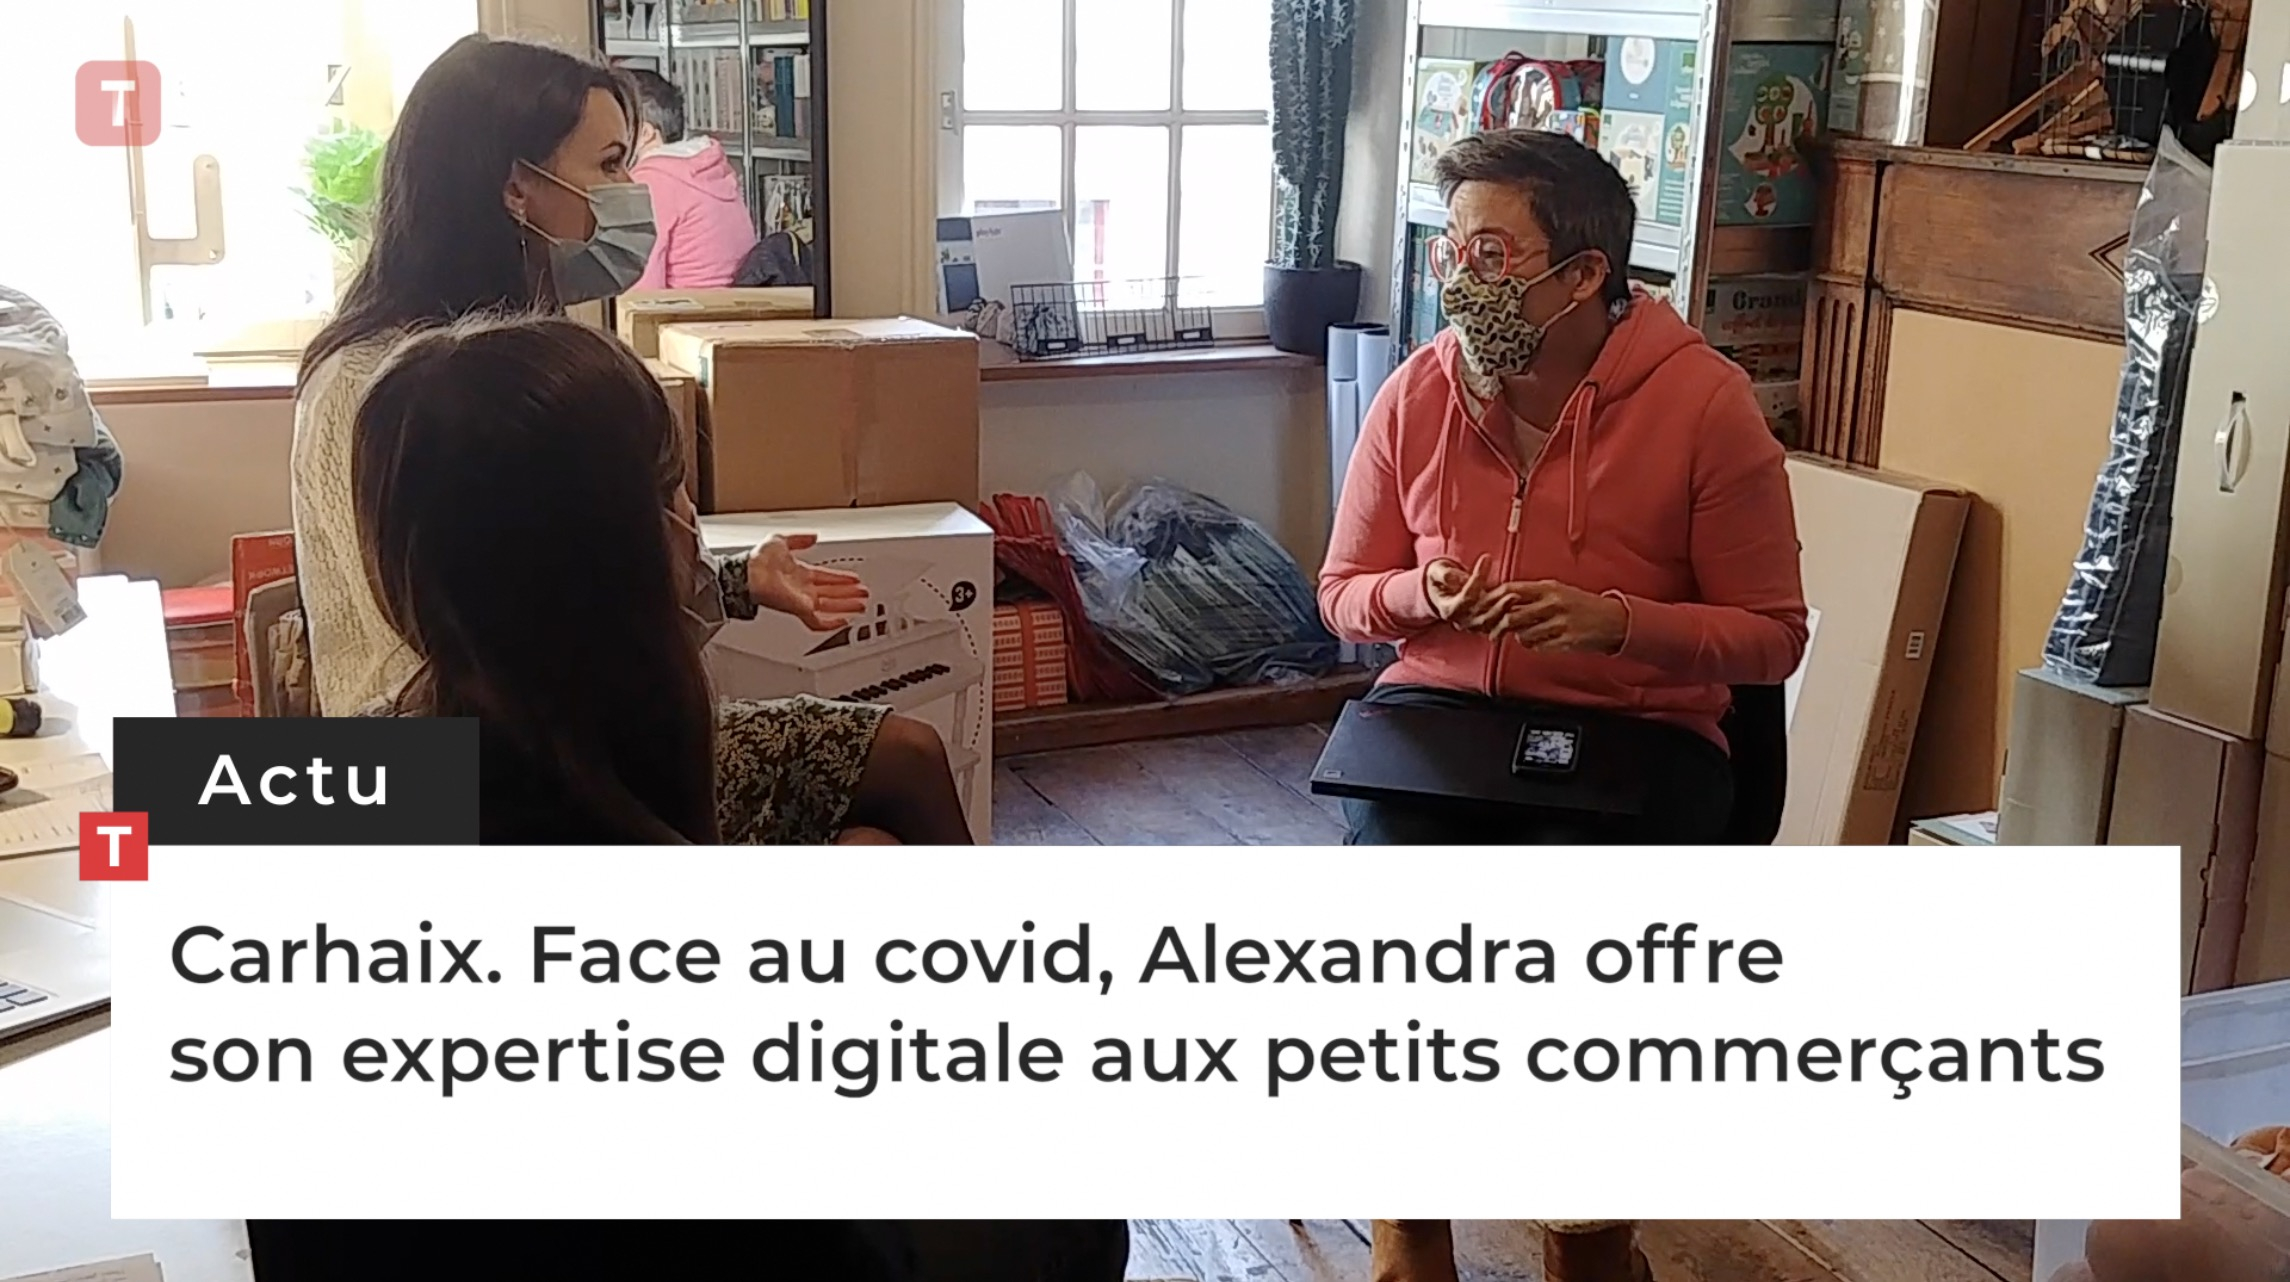 Carhaix. Face au covid, Alexandra offre son expertise digitale aux petits commerçants (Le Télégramme)